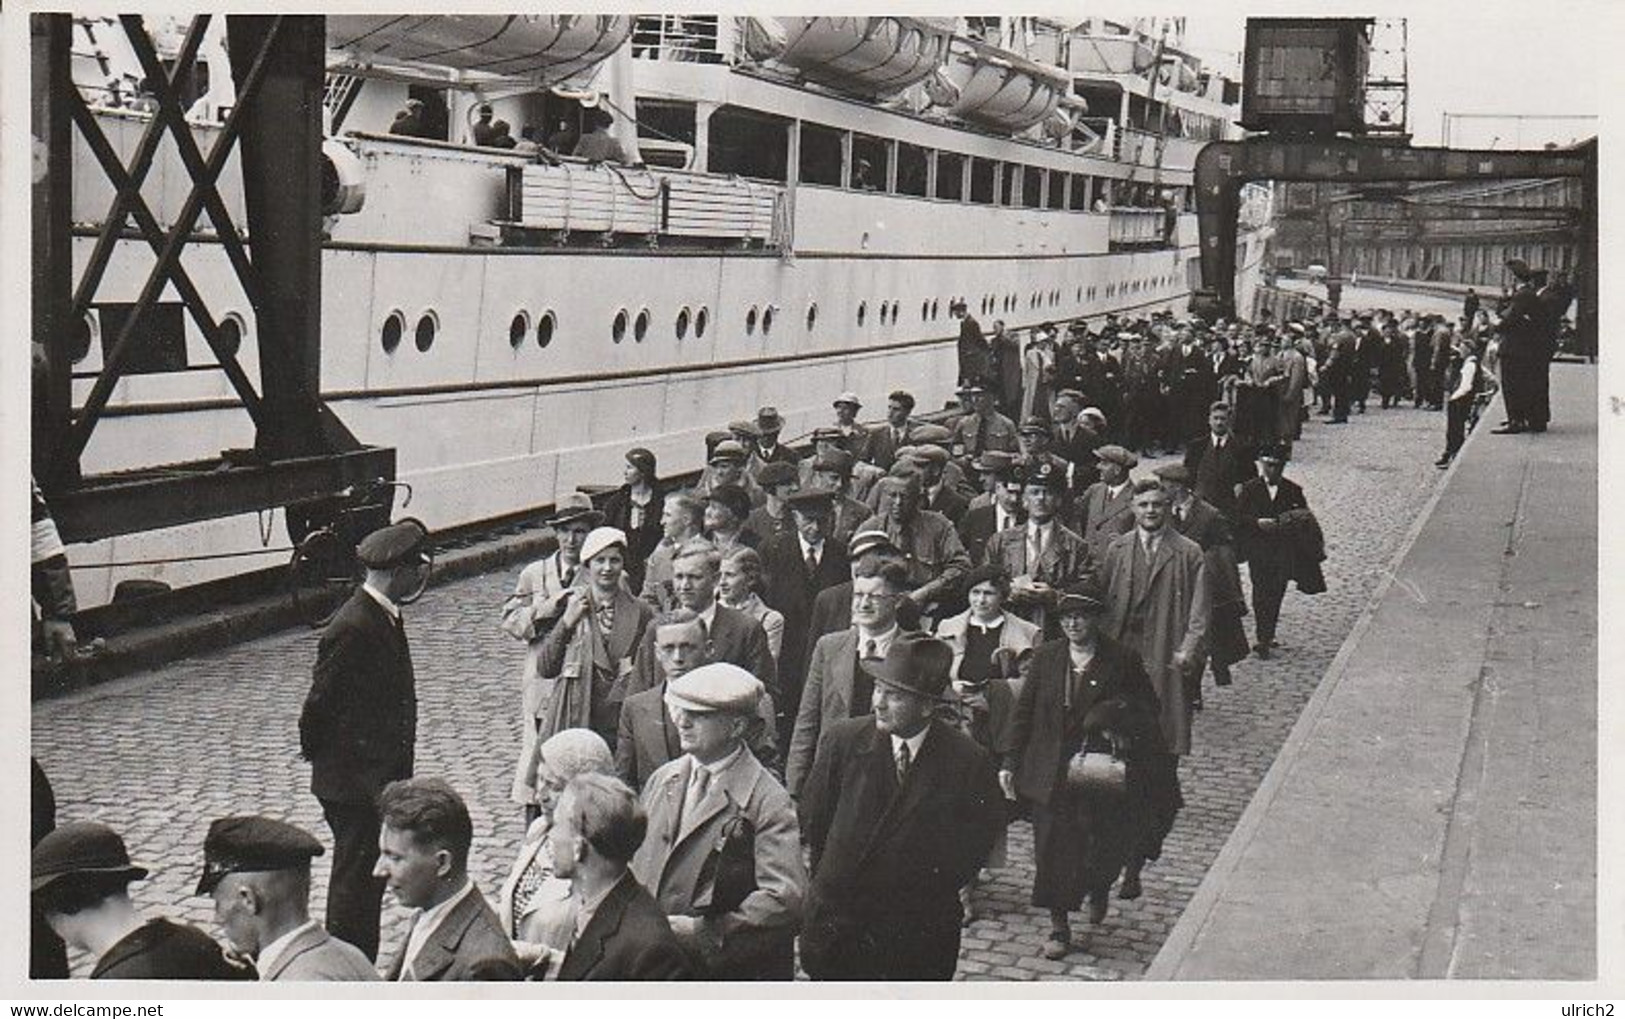 AK Foto Dampfer Oceana - Hamburg-Amerika-Linie - Passagiere Beim Einschiffen In Hamburg - 1935  (60304) - Dampfer